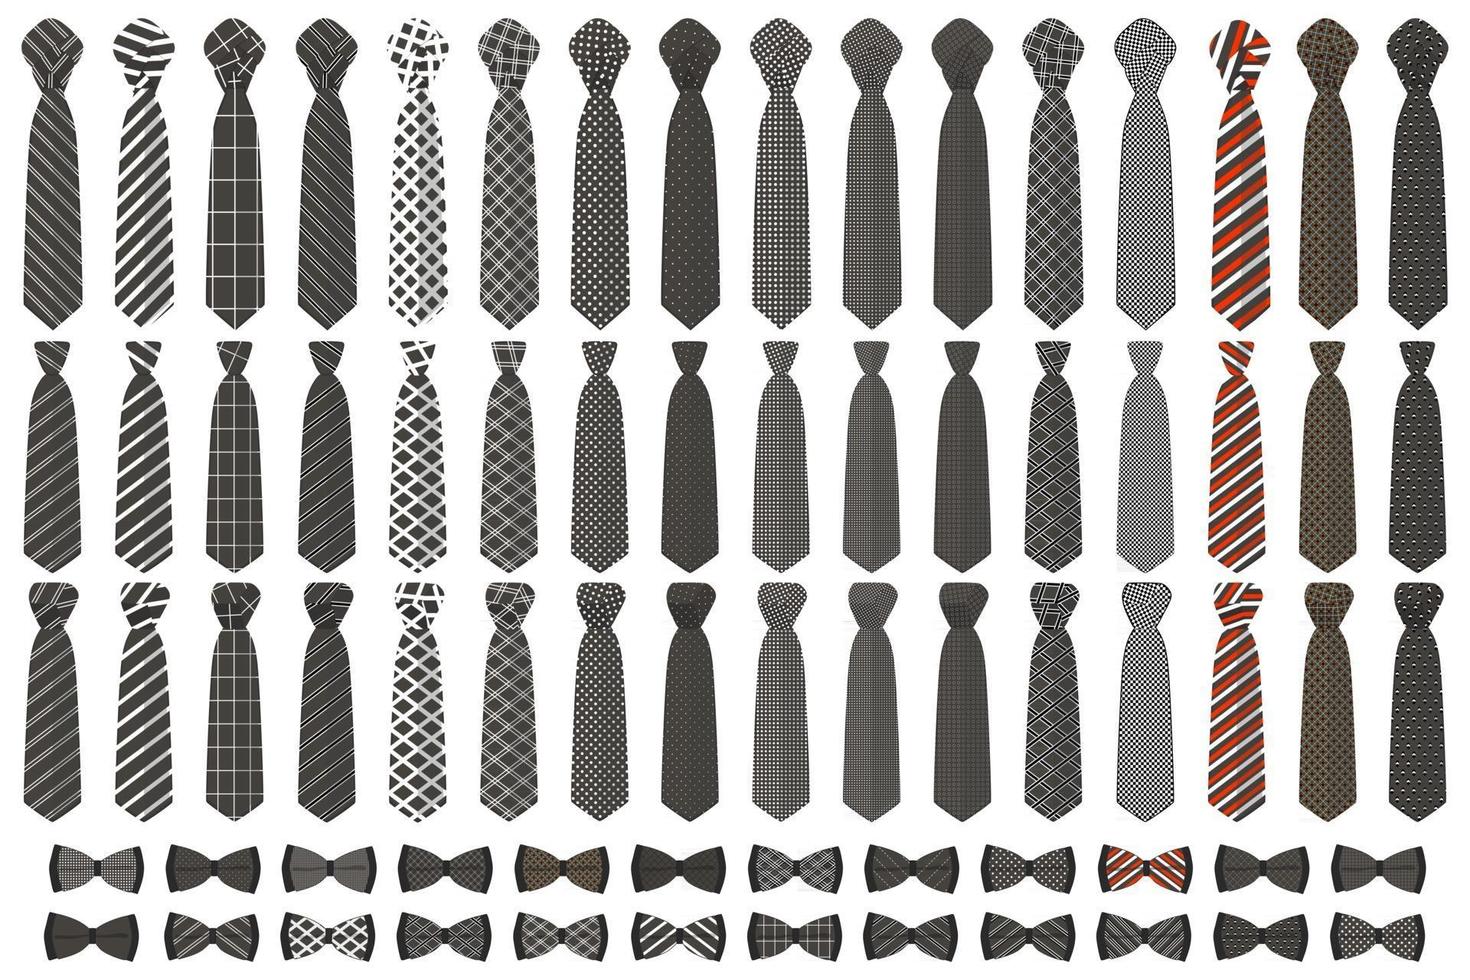 illustrazione a tema grande set colorato cravatte diversi tipi vettore